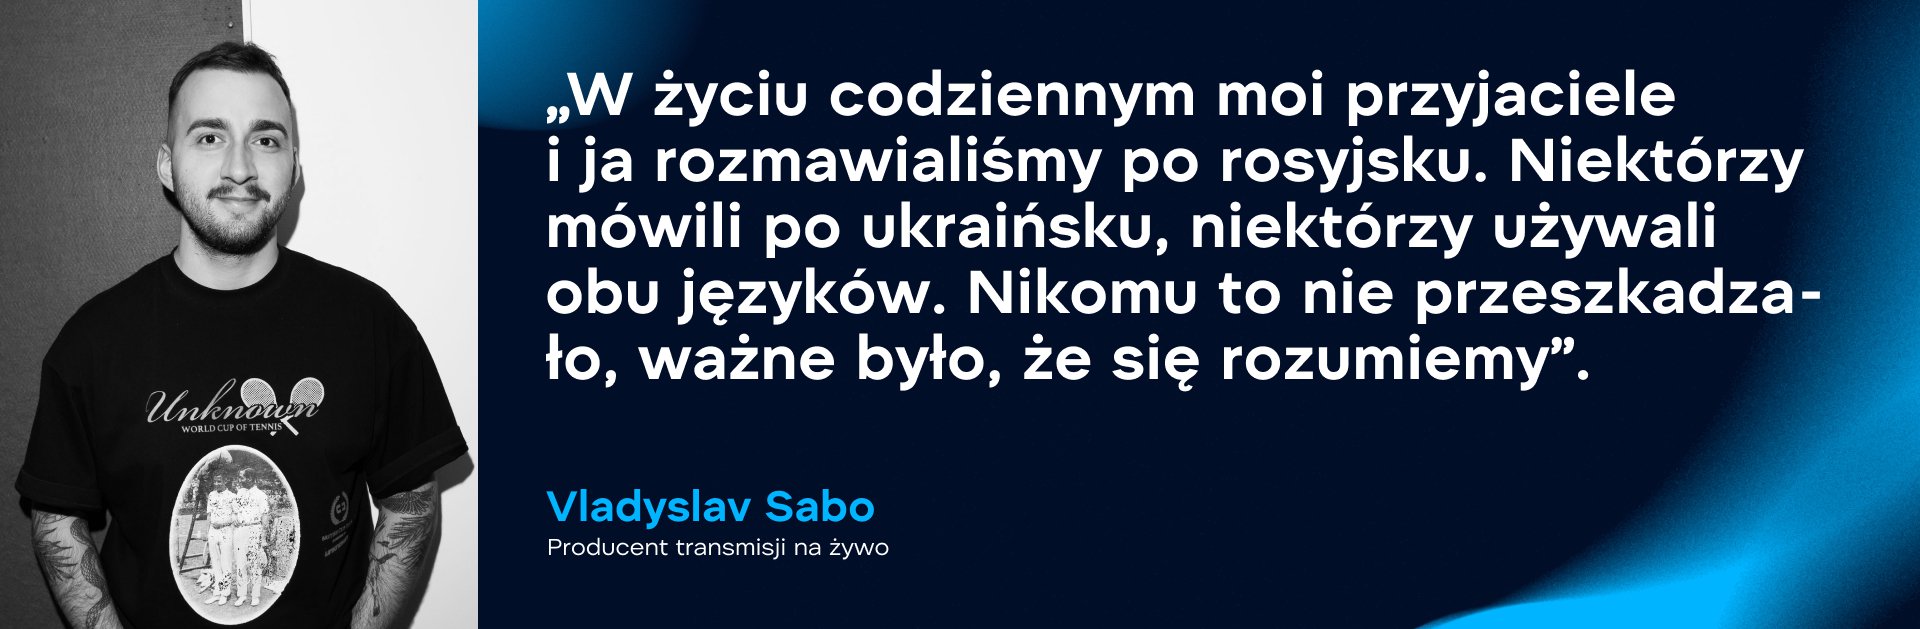 Vladyslav Sabo, producent transmisji na żywo. Zdjęcie: WePlay Holding